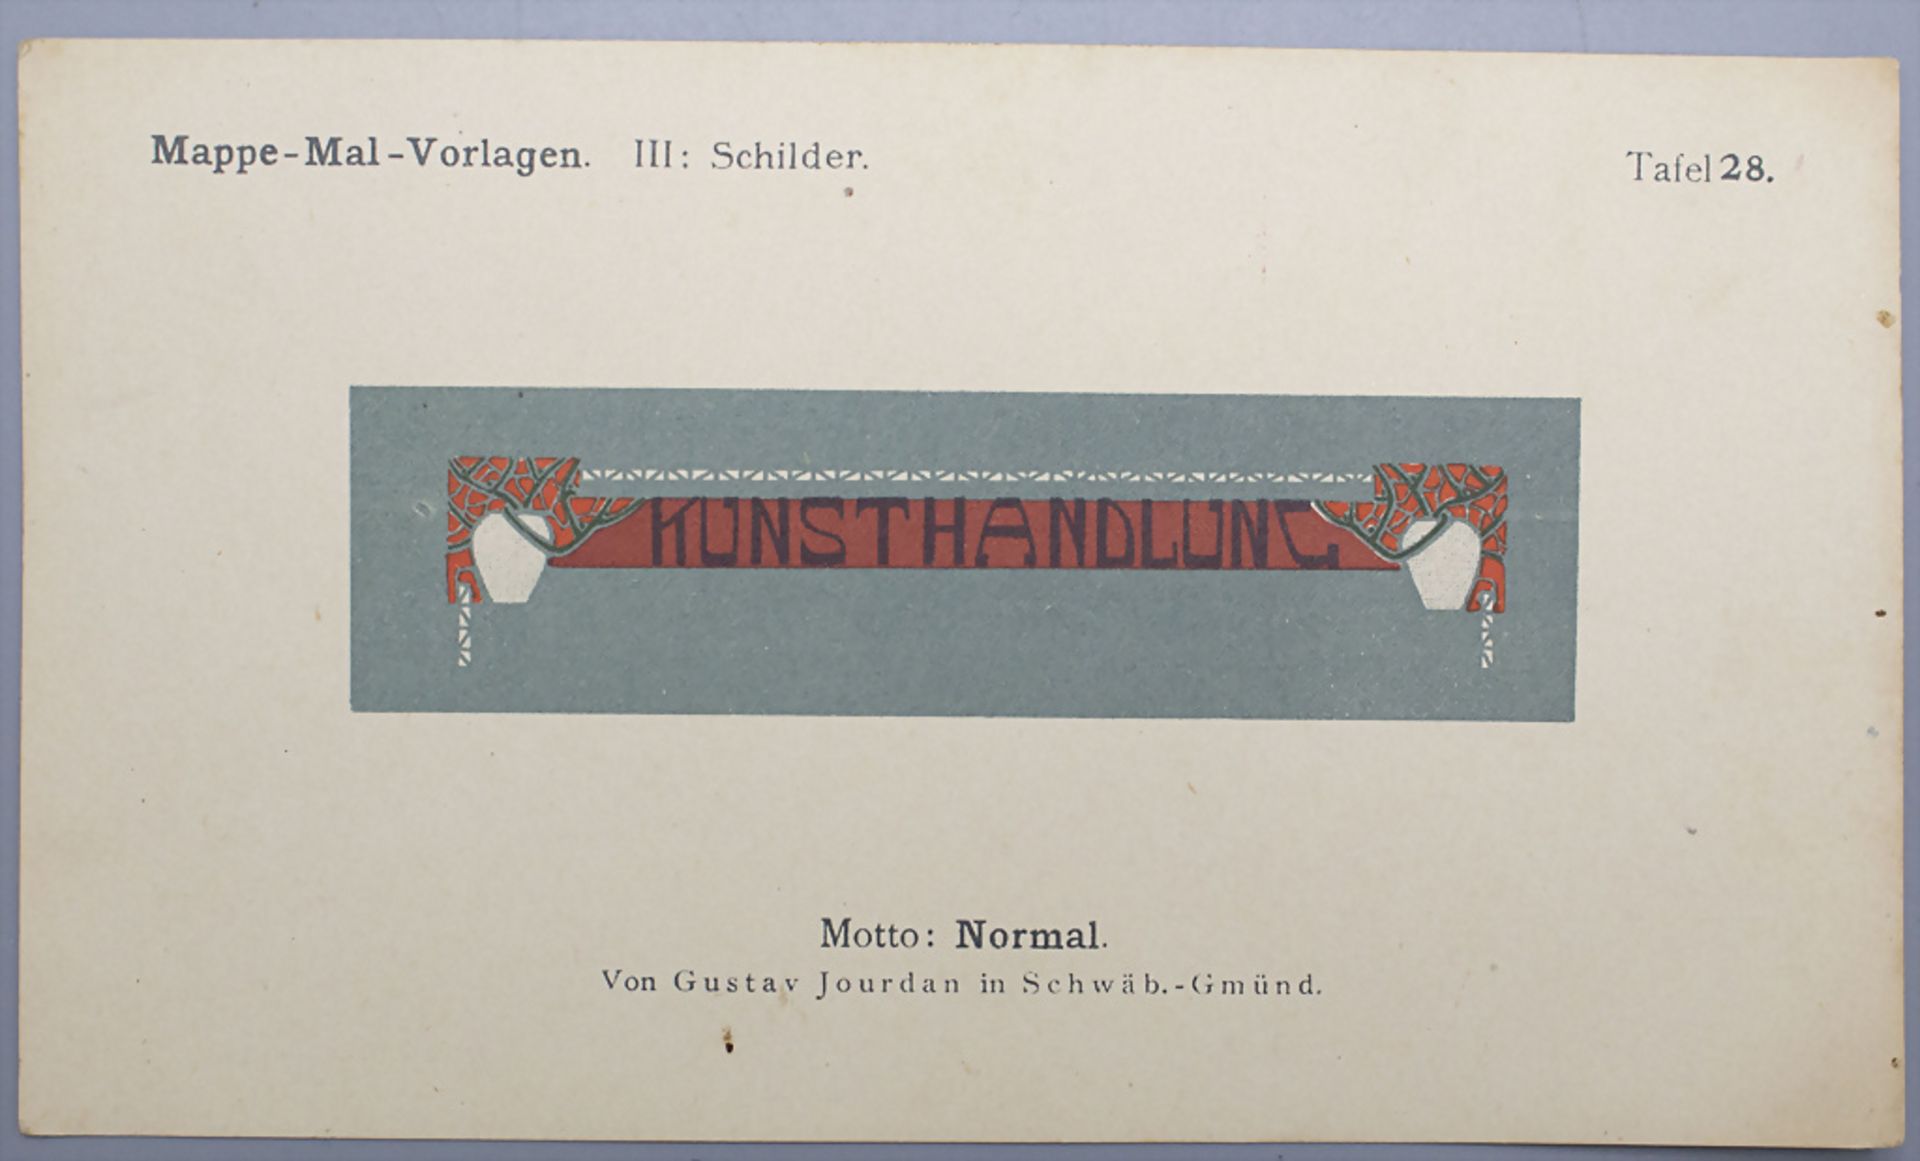 Jugendstil Mal-Vorlagen für Werbeschilder auf 36 Tafeln / 36 Art Nouveau pattern for ... - Bild 6 aus 9